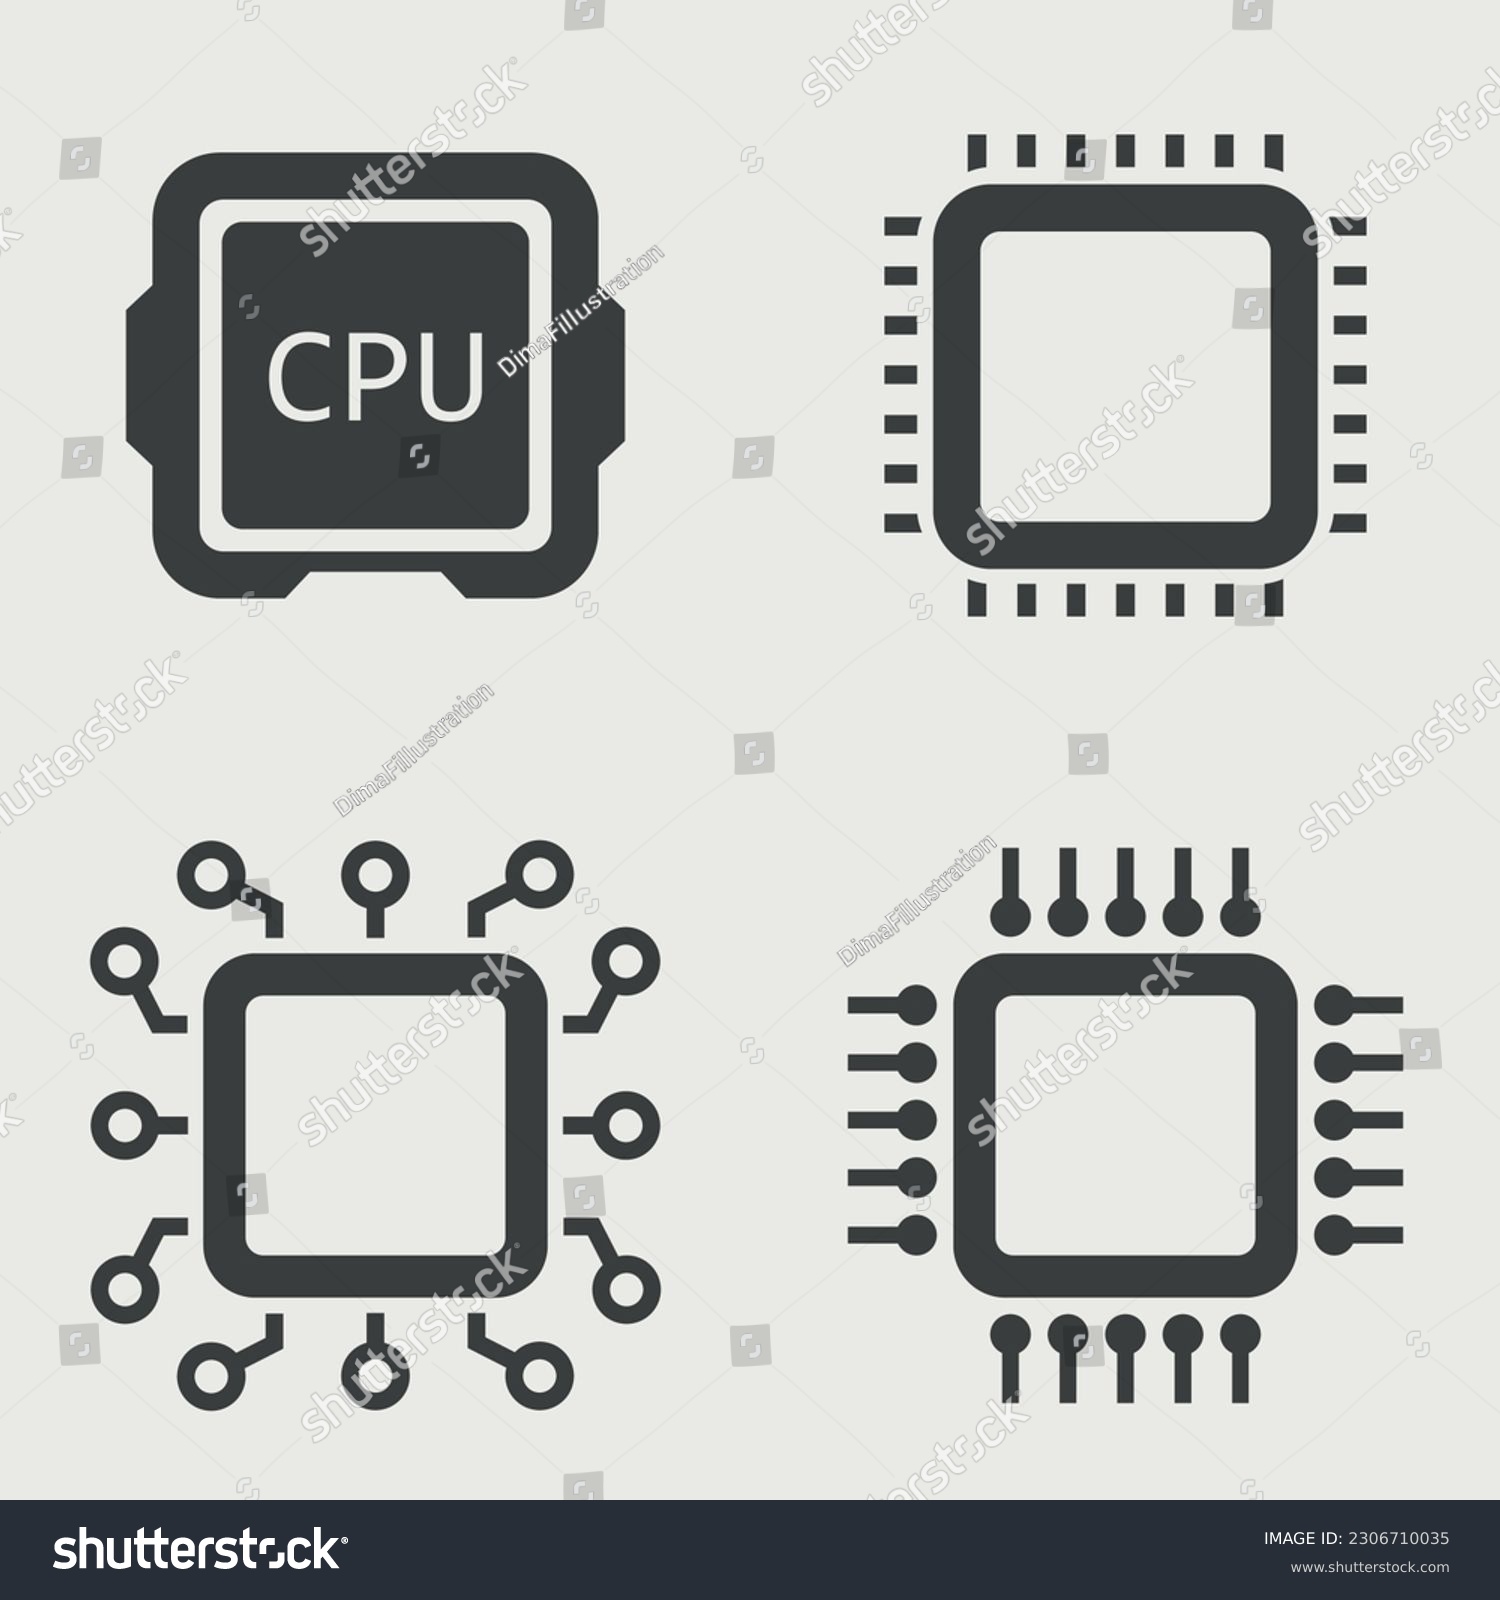 SVG of Cpu computer chop. Vector illustration. svg